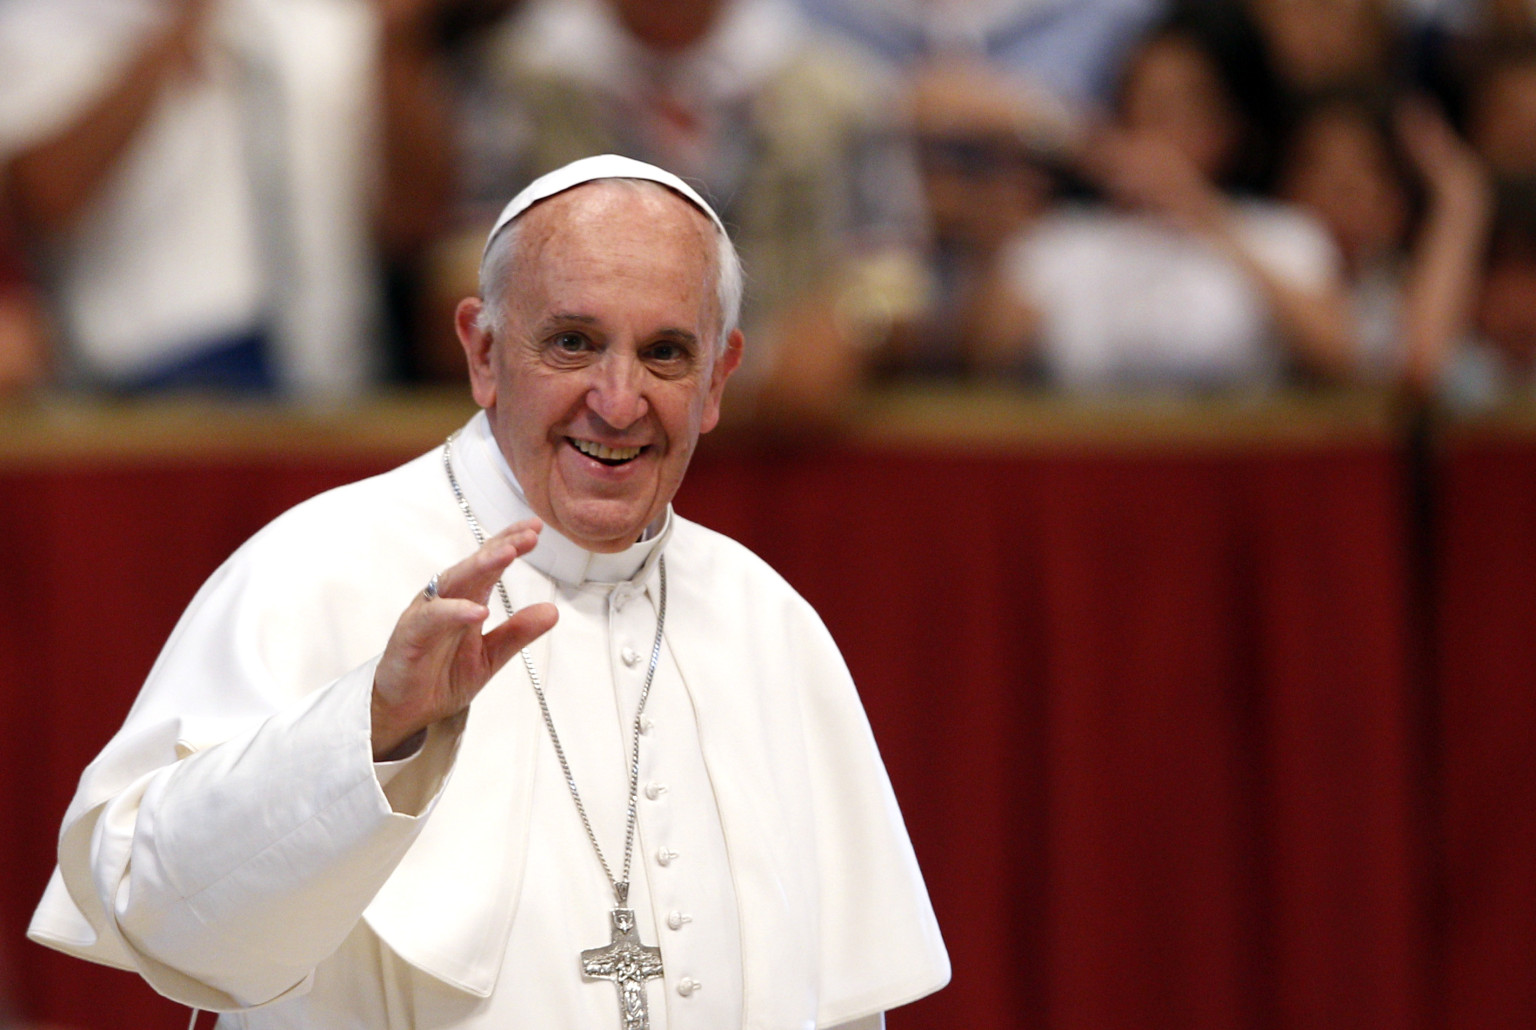 البابا فرنسيس يشعر بالصدمة والحزن بعد الاعتداء على دار للمسنين في عدن